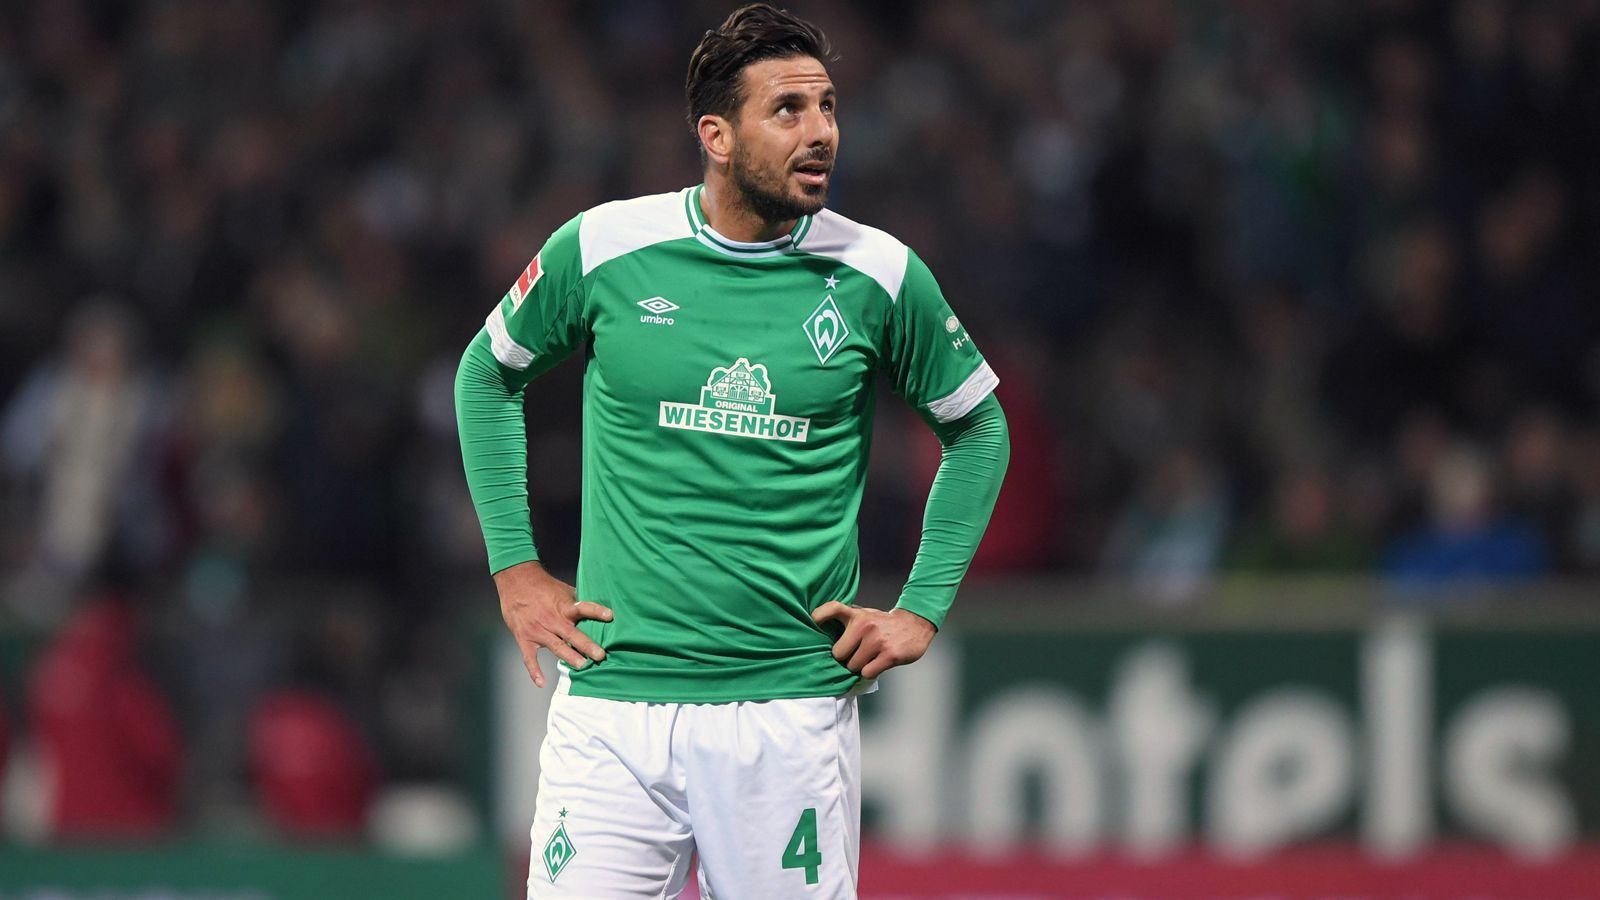 
                <strong>Platz 8 - Claudio Pizarro</strong><br>
                Tore im DFB-Pokal: 31Verein(e): SV Werder Bremen, 1. FC Köln, Bayern München
              